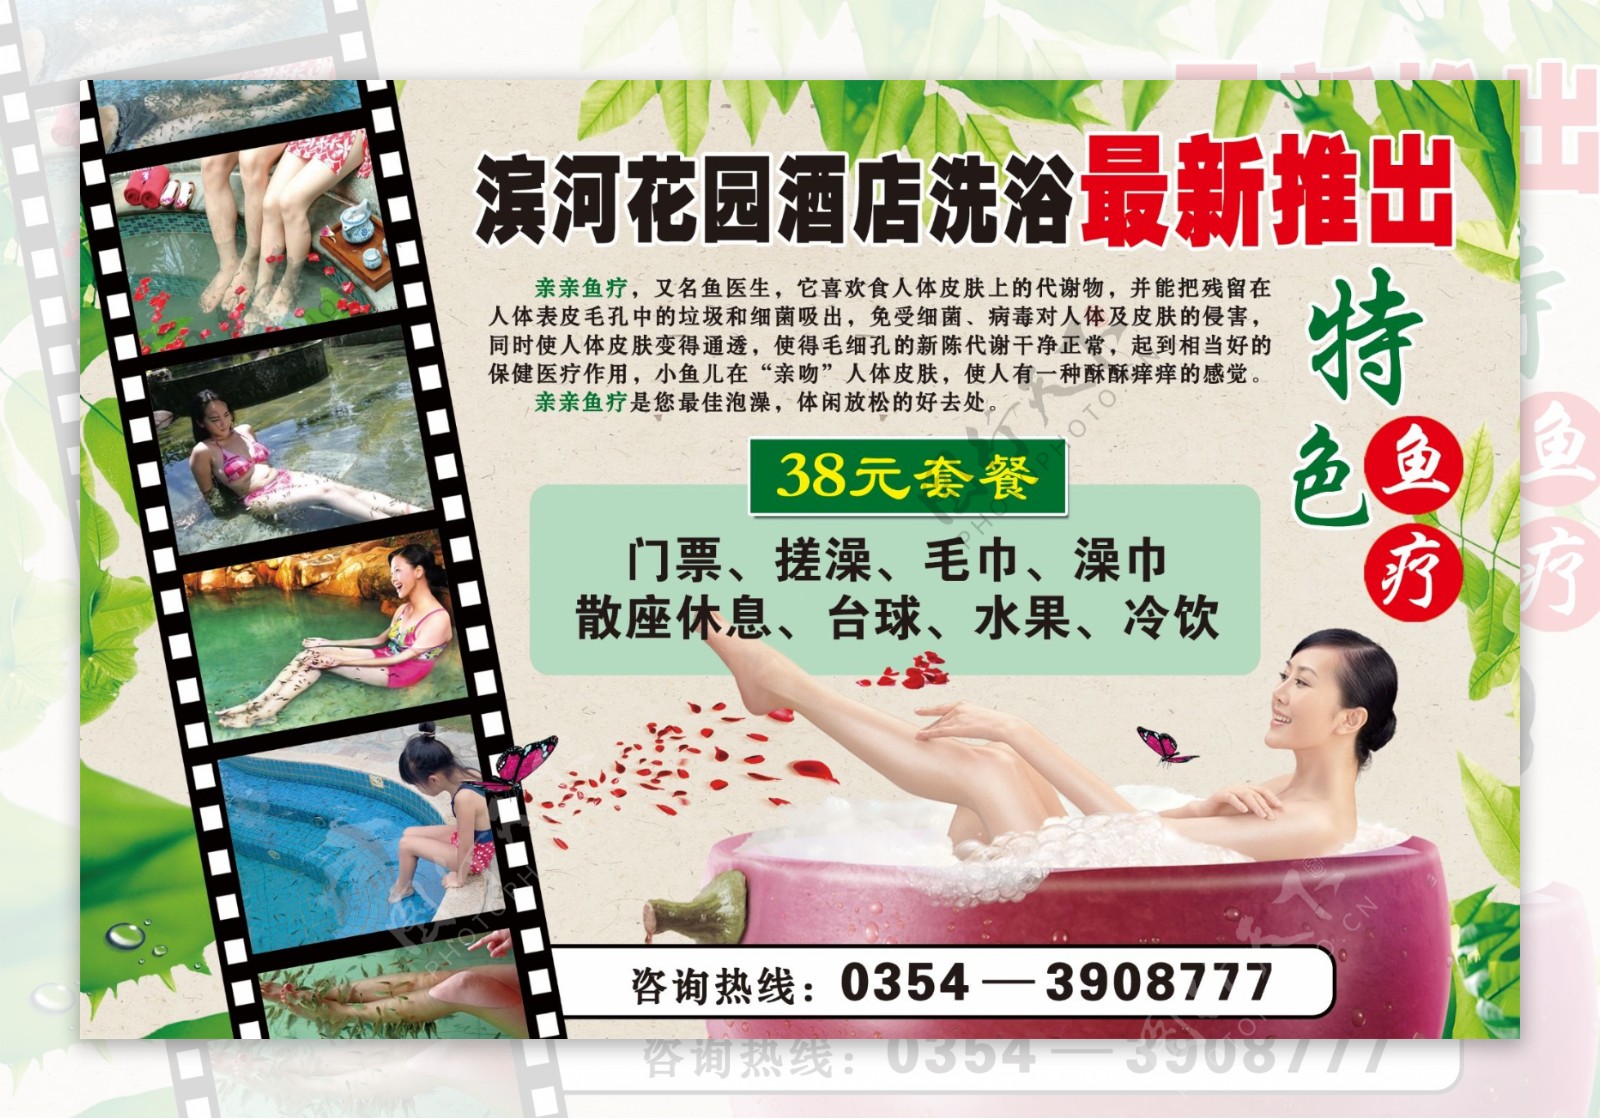 滨河花园酒店洗浴推出鱼疗广告